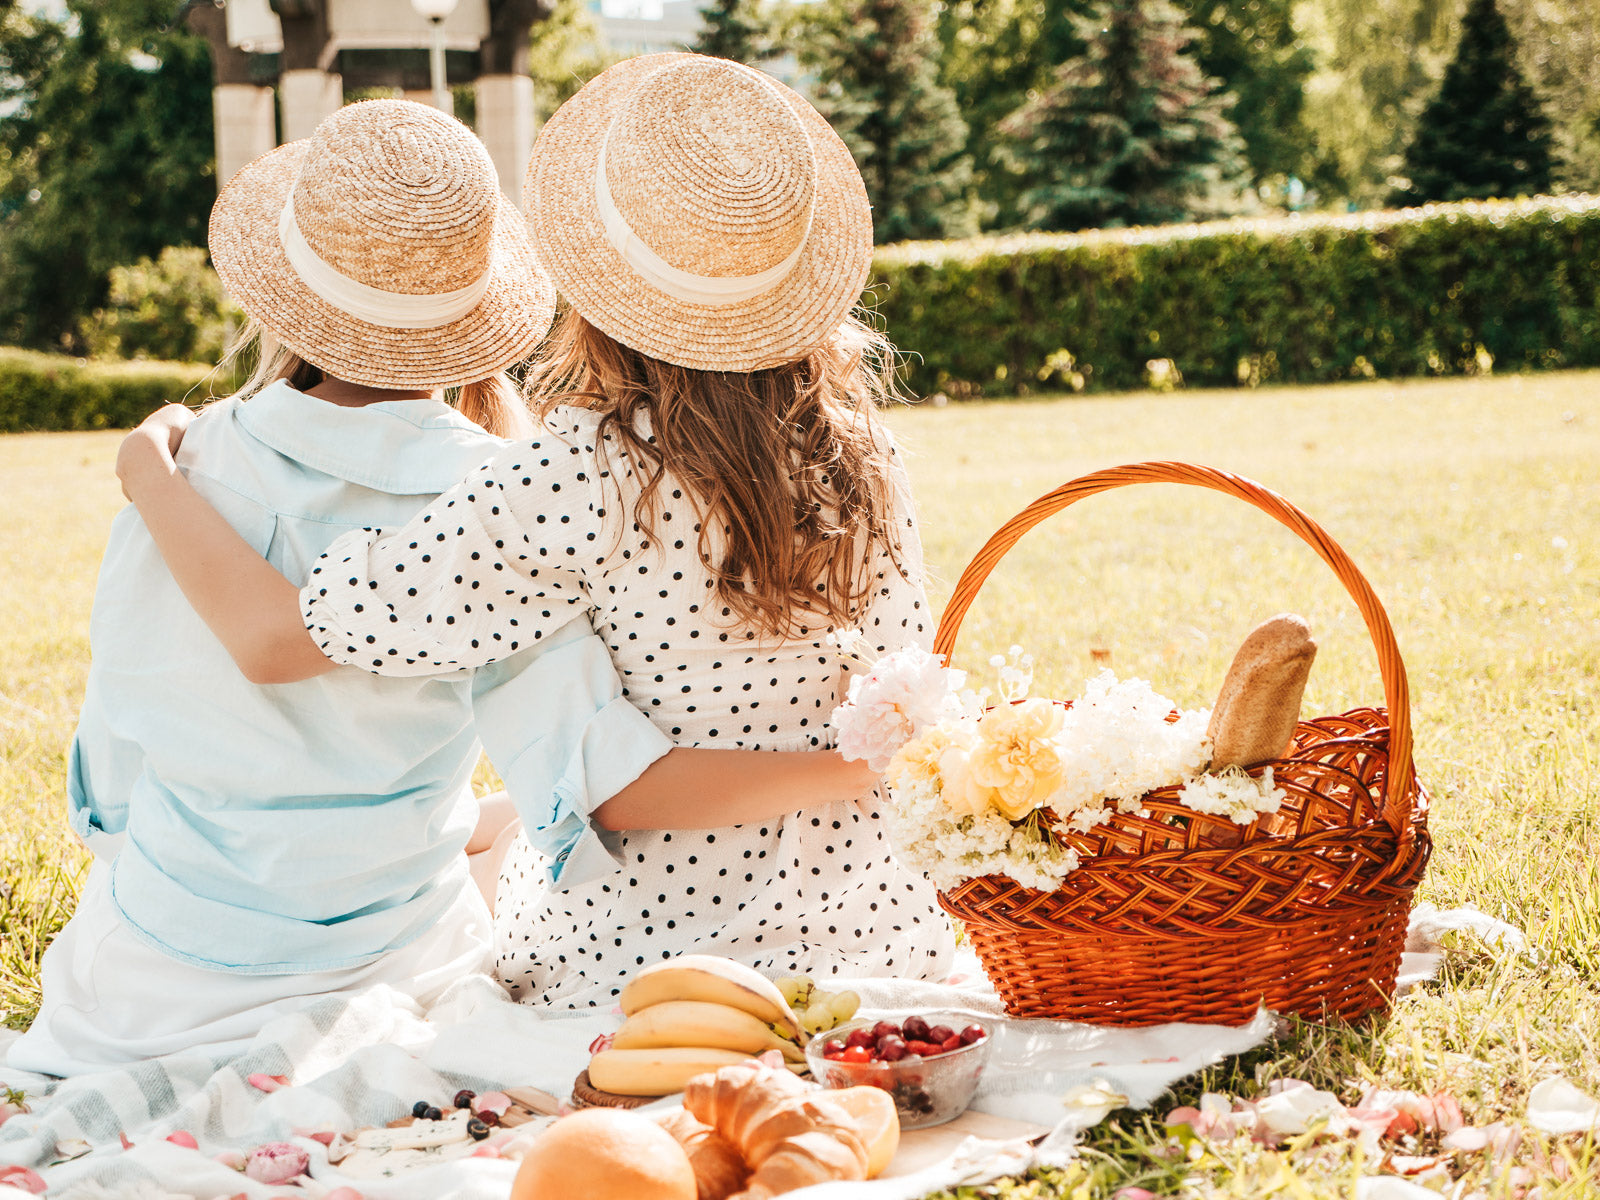 Frauen machen Picknick mit glutenfreien Backwaren